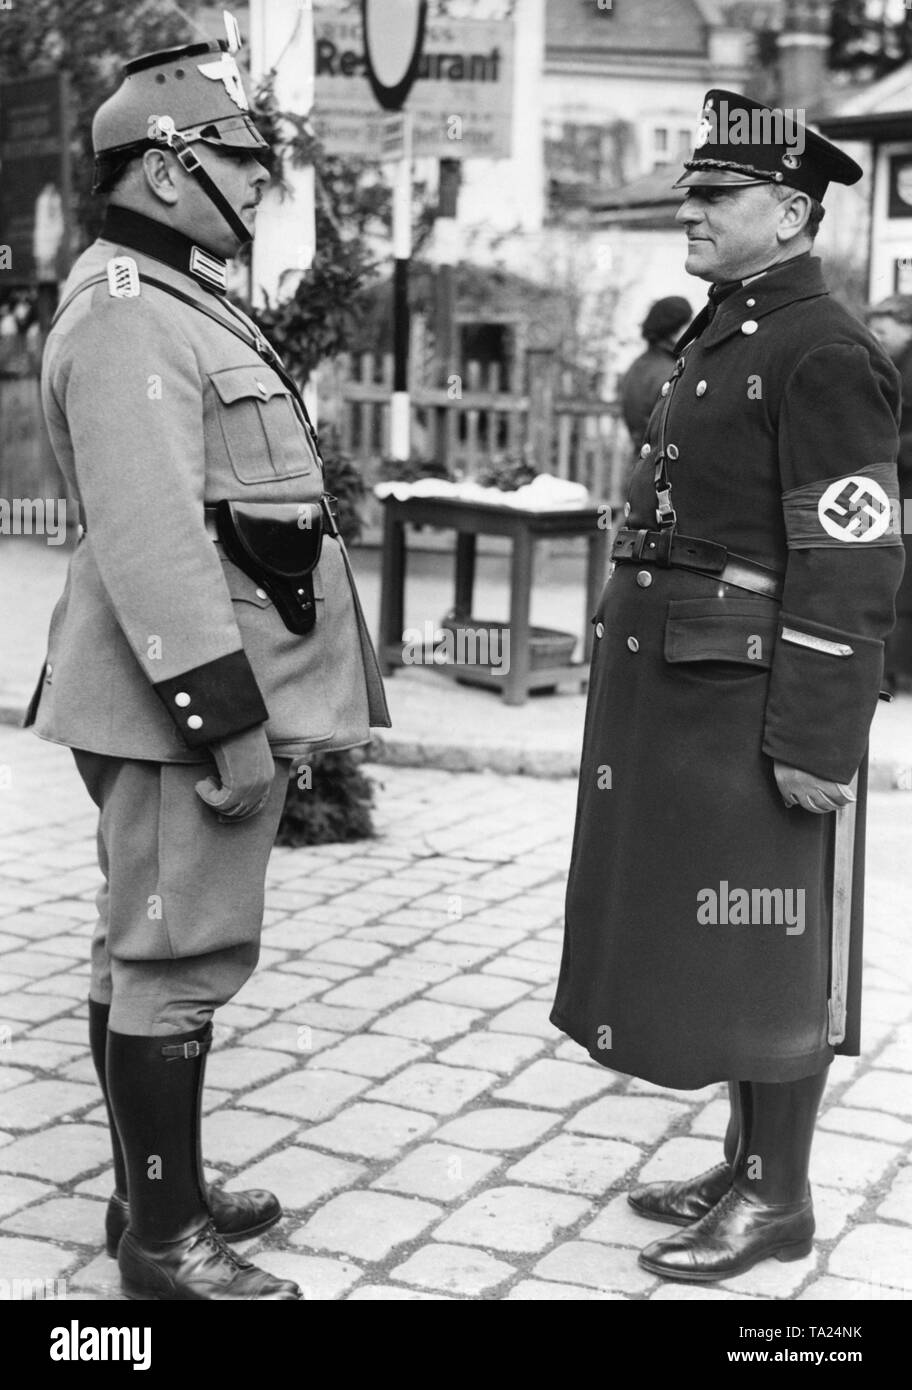 Nach dem Anschluss Österreichs an das Deutsche Reich die österreichische Polizei neue Uniformen erhält. Auf der rechten Seite ist die alte Uniform der Wiener Polizei und auf der linken Seite die neue Uniform. Stockfoto